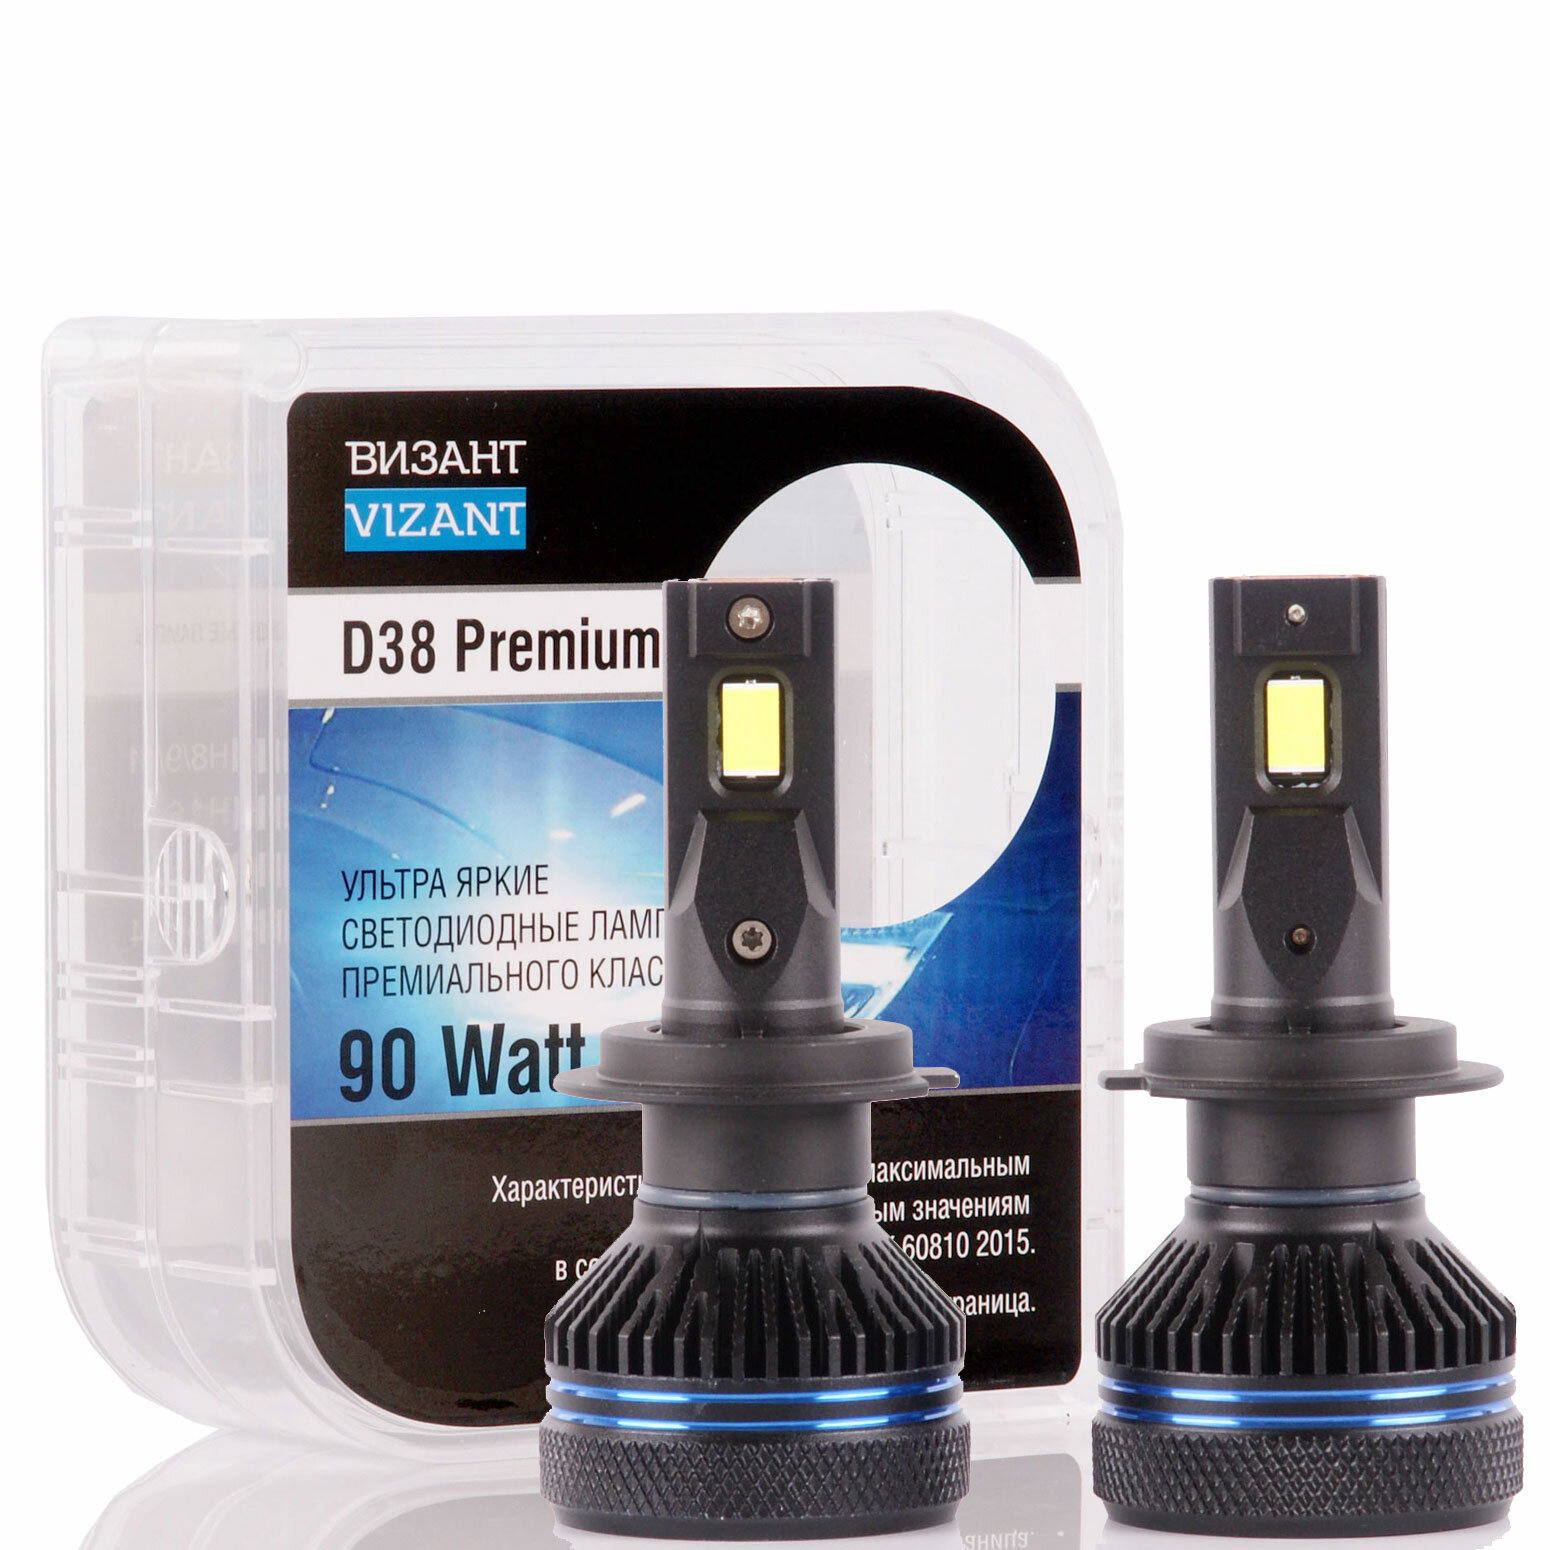 Светодиодные лампы Vizant D38 Premium цоколь H7 с чипом CSP 4575 9000lm 5000k